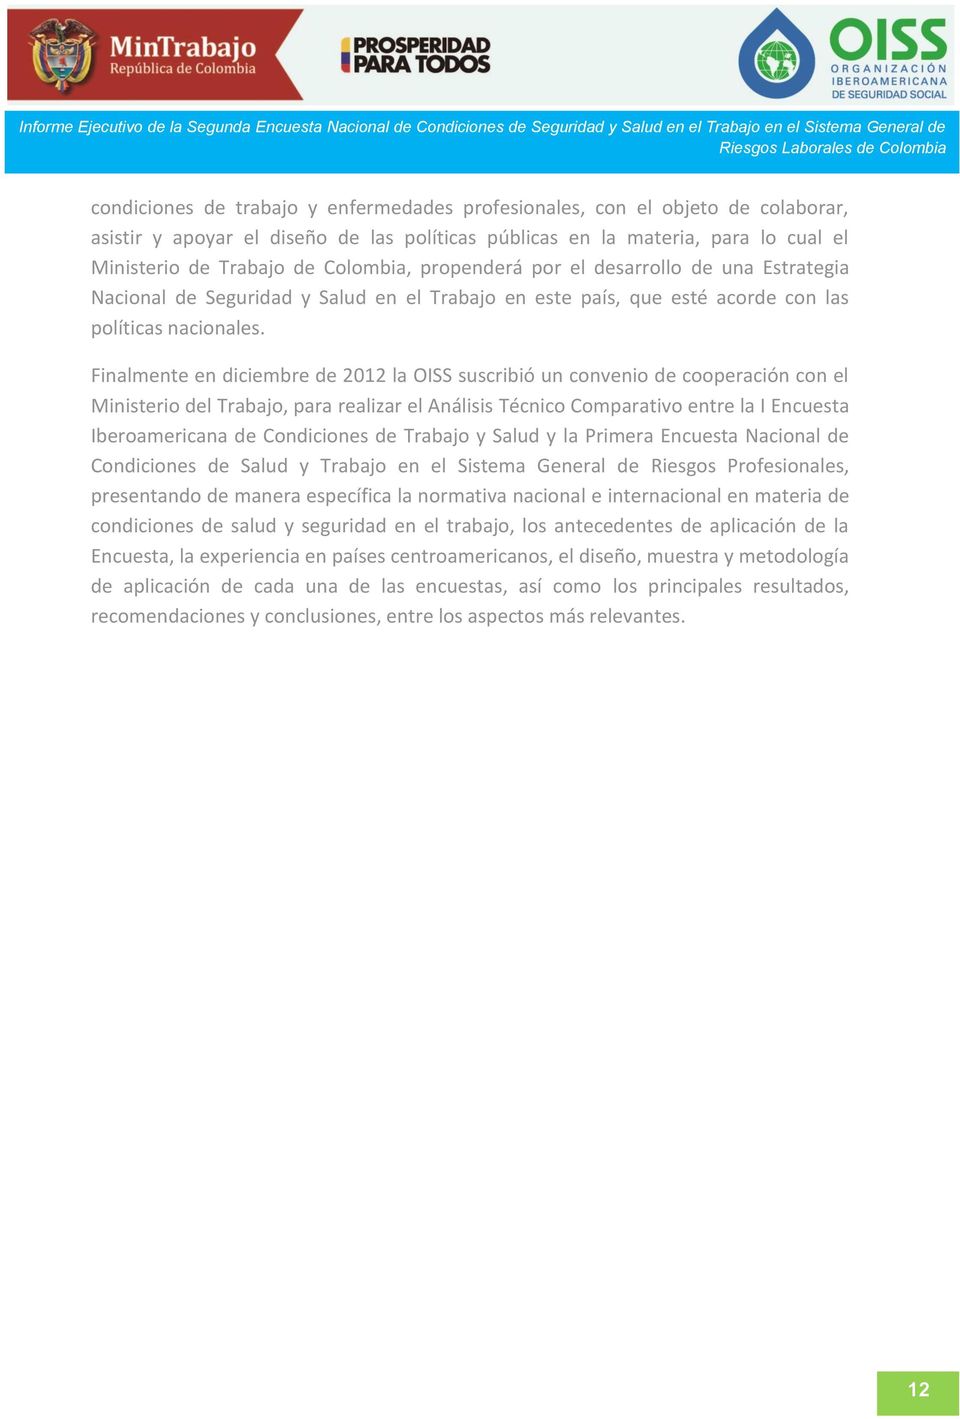 Finalmente en diciembre de 2012 la OISS suscribió un convenio de cooperación con el Ministerio del Trabajo, para realizar el Análisis Técnico Comparativo entre la I Encuesta Iberoamericana de